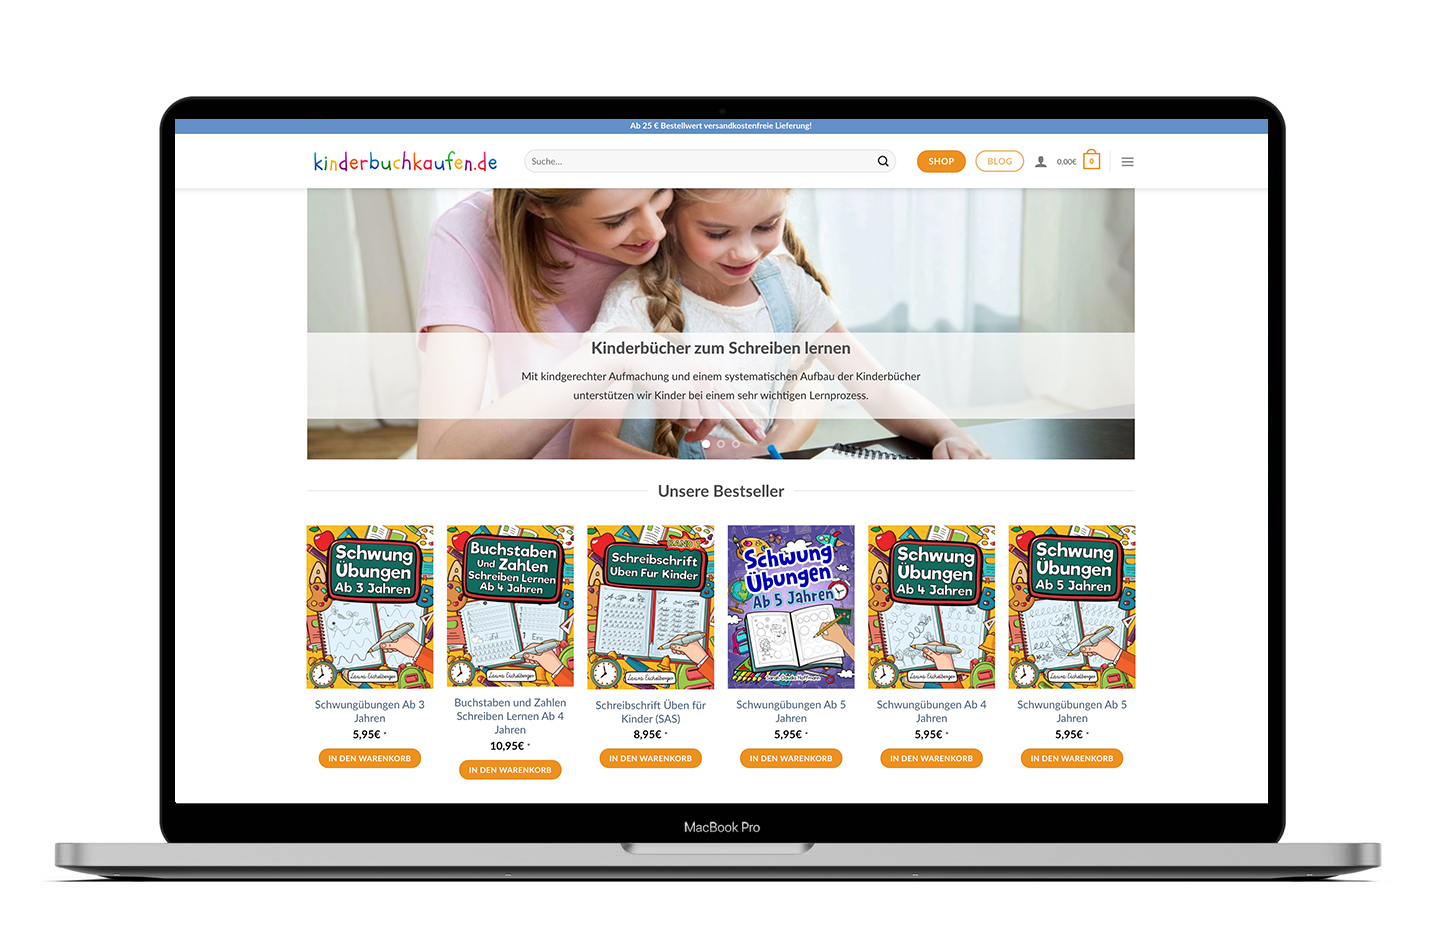 Webshop, E-Commerce Website - Auf kinderbuchkaufen.de finden Eltern und Kind eine große Auswahl an Kinderbüchern ob Kinderbuch Klassiker, Bestseller und Neuerscheinungen.